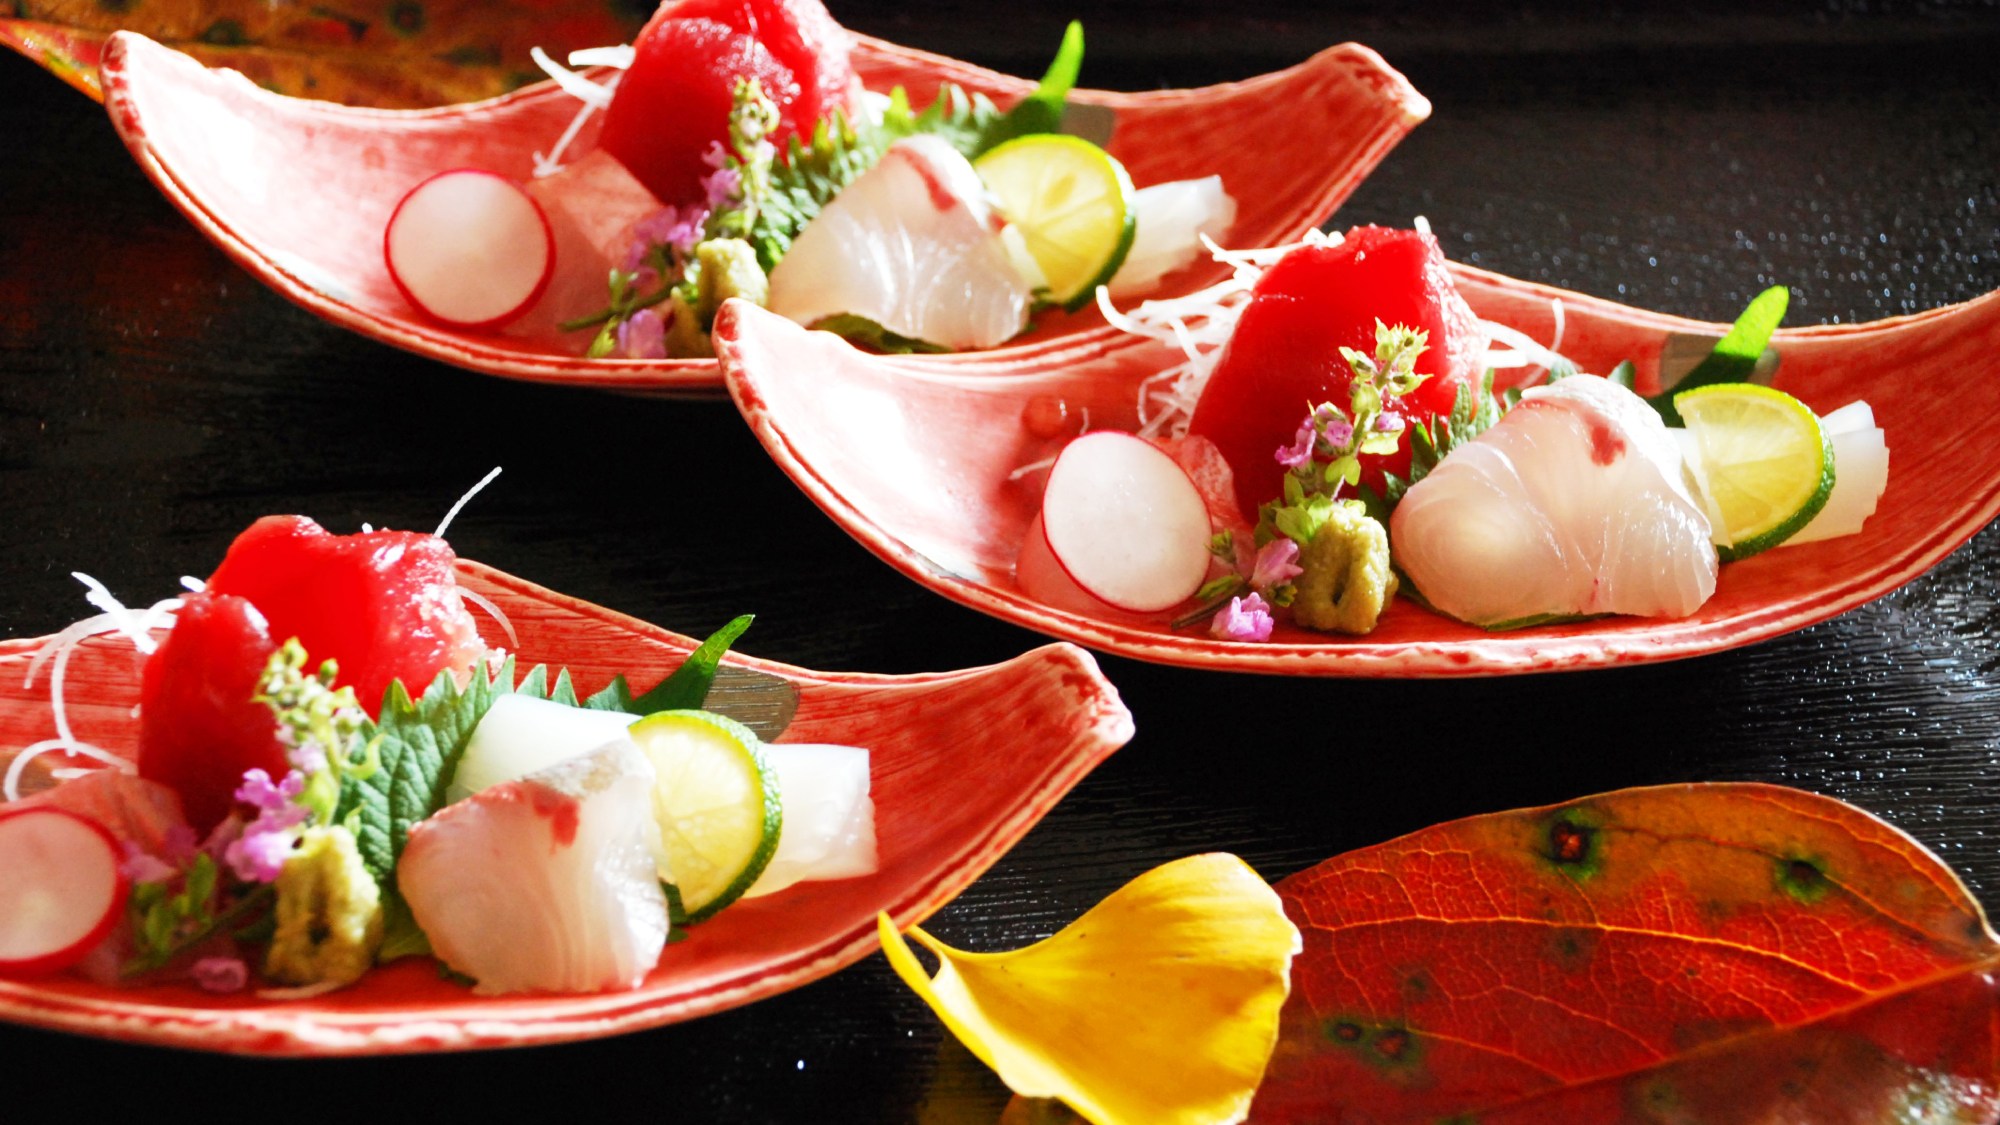 ・【お料理一例】静岡の豊富な山海の幸を取り入れた創作料理です